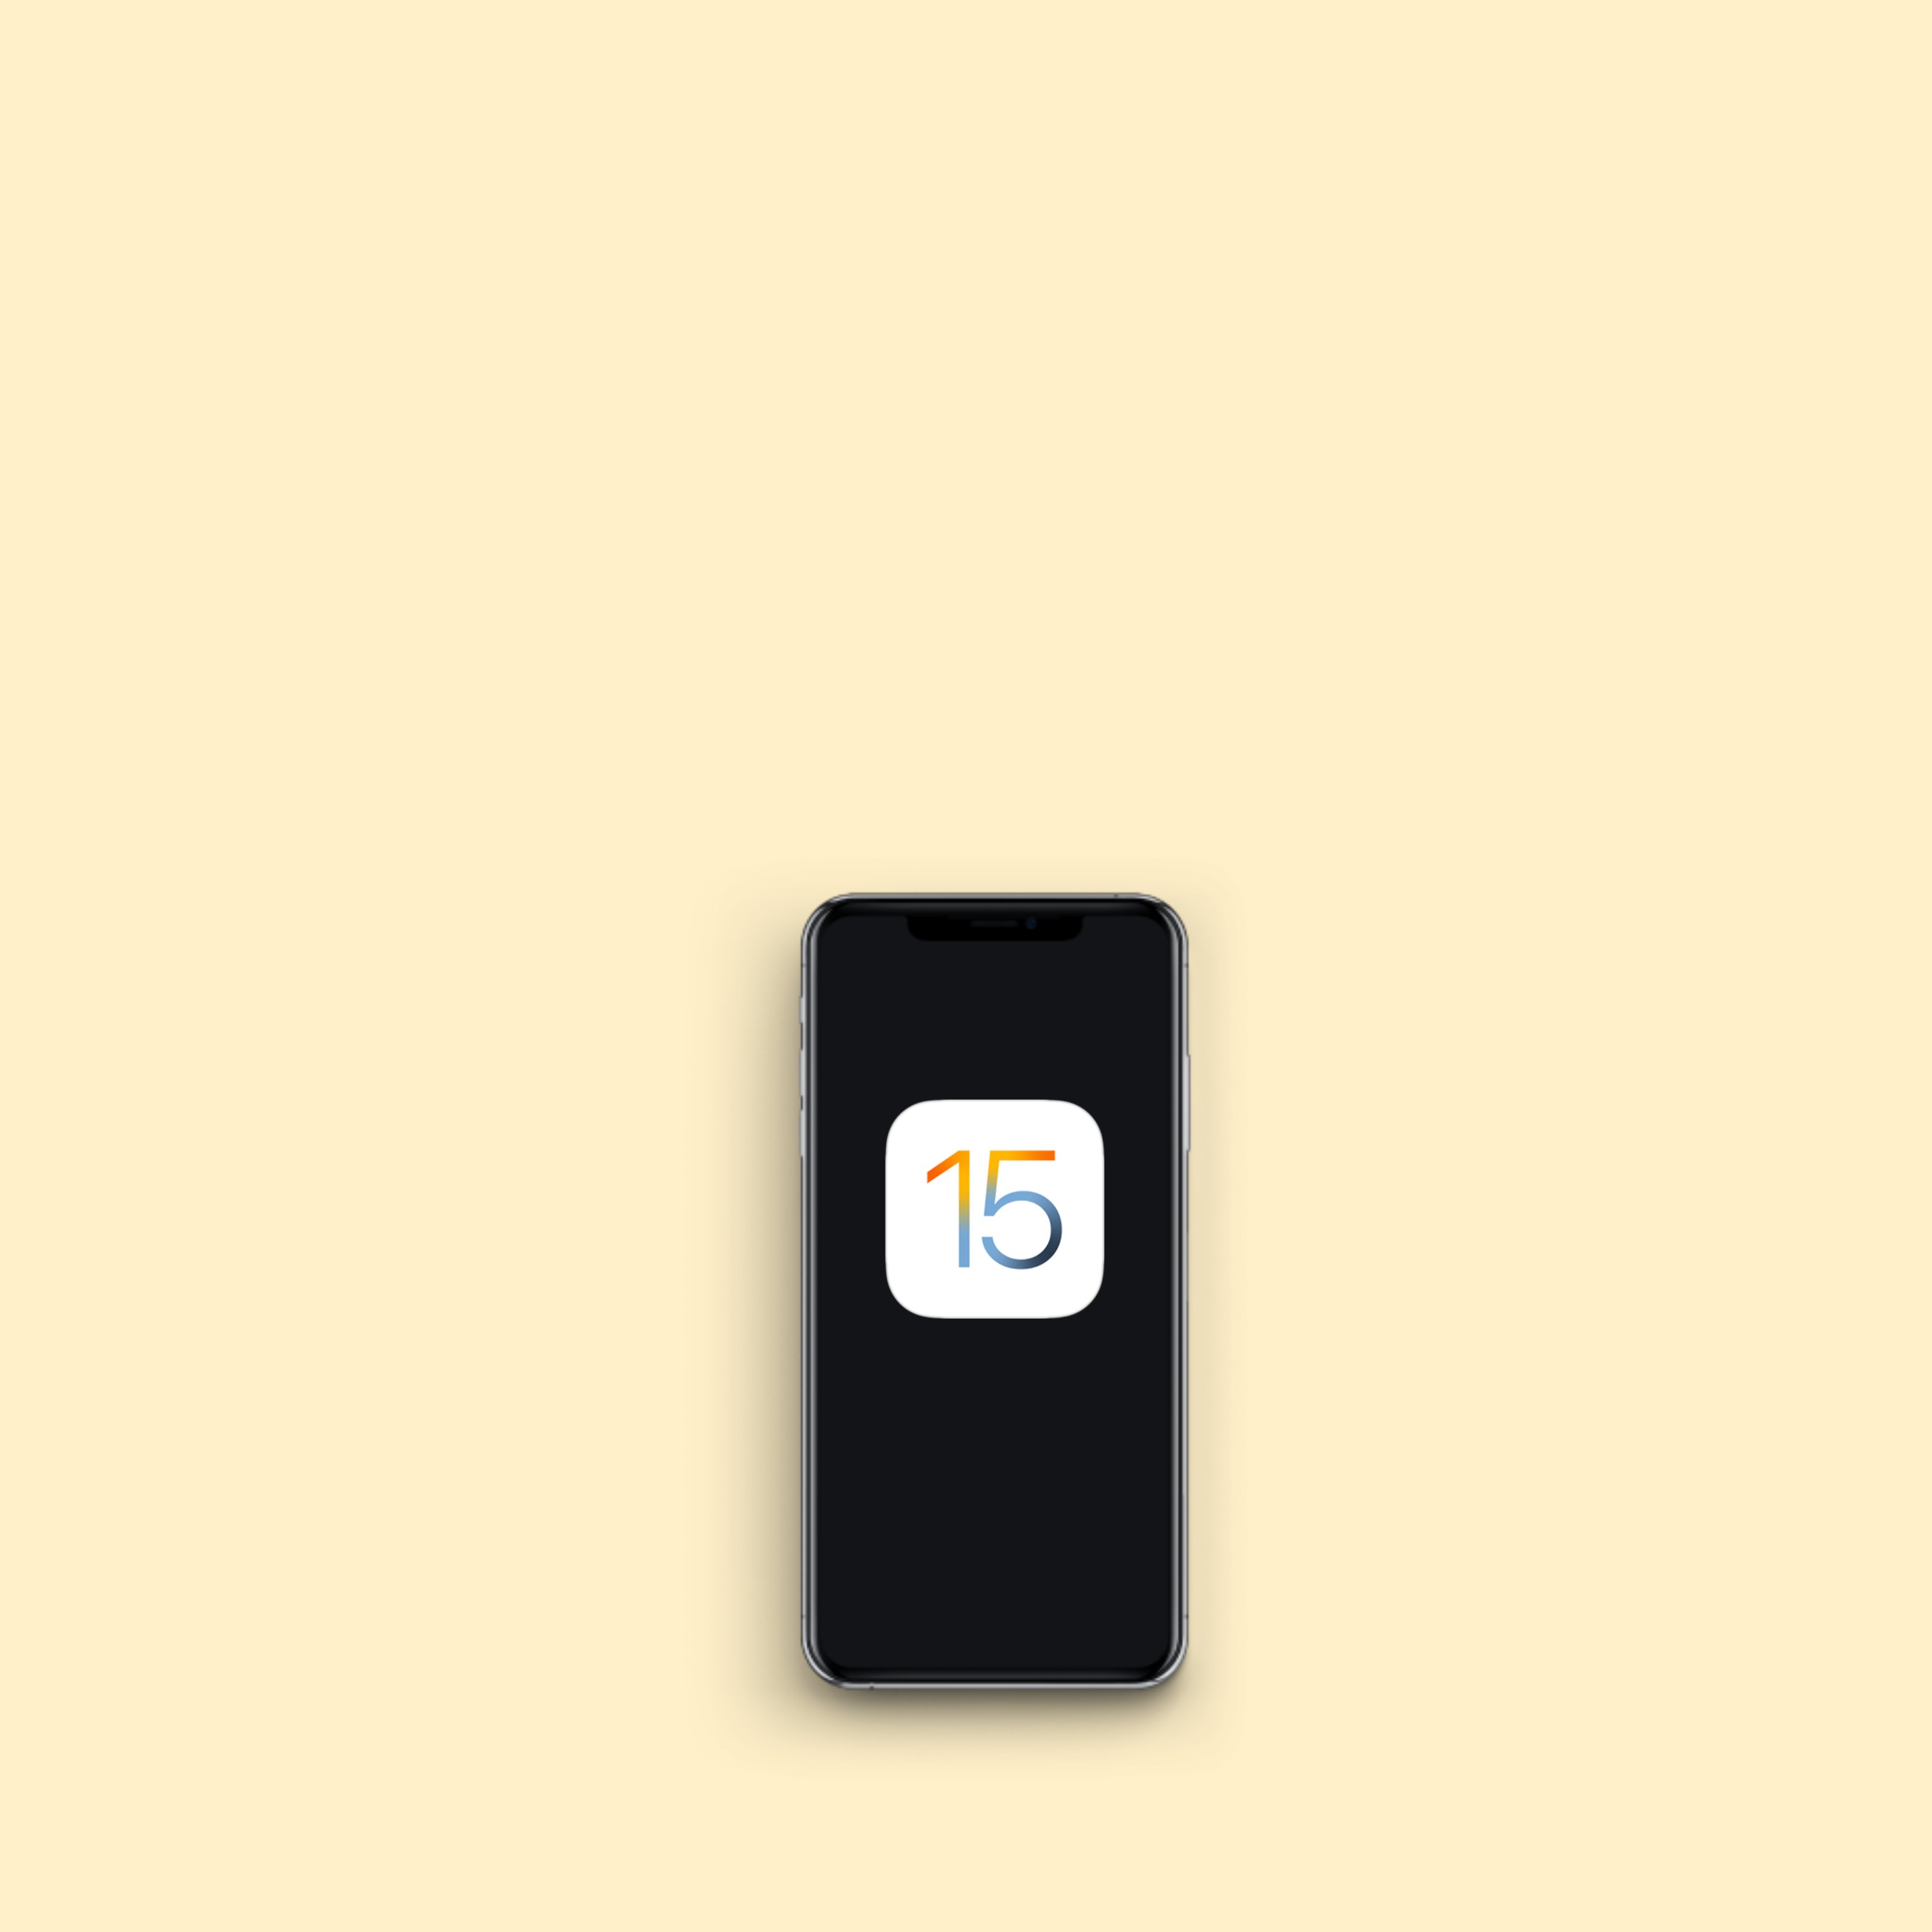 Ja està disponible iOS 15 per a iPhone i aquestes són les seves principals novetats